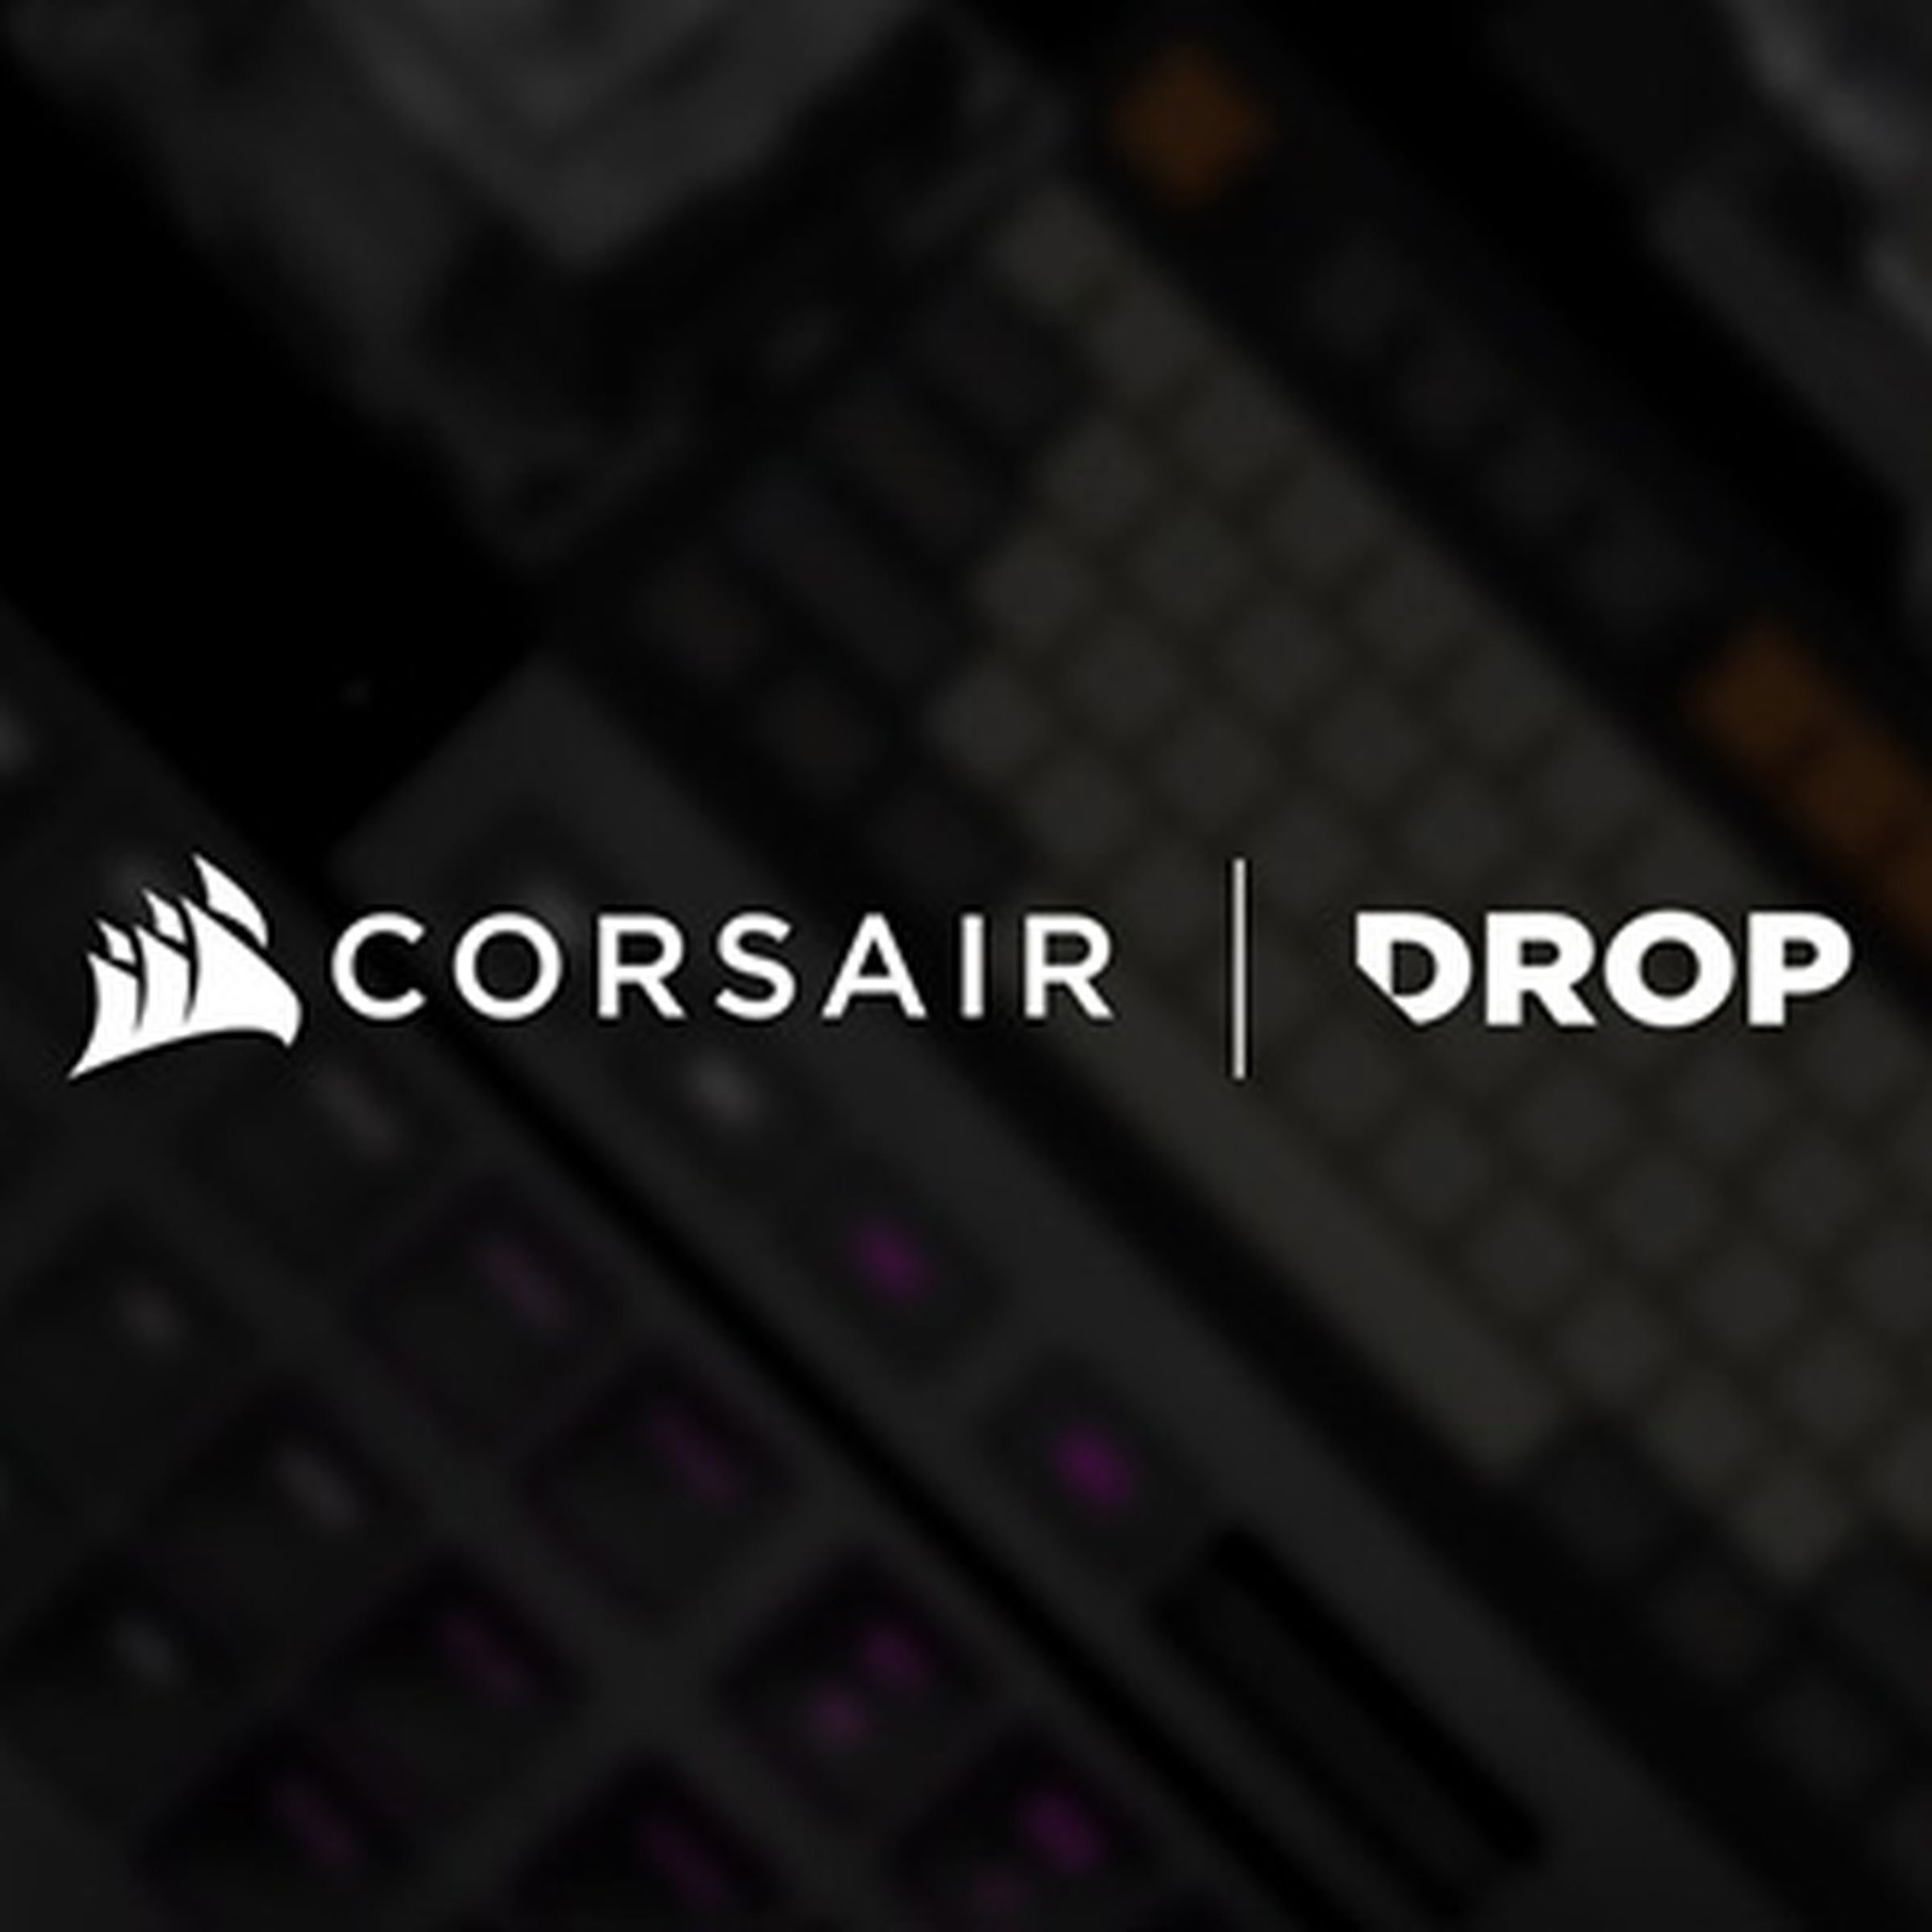 Drop and Corsair logos.